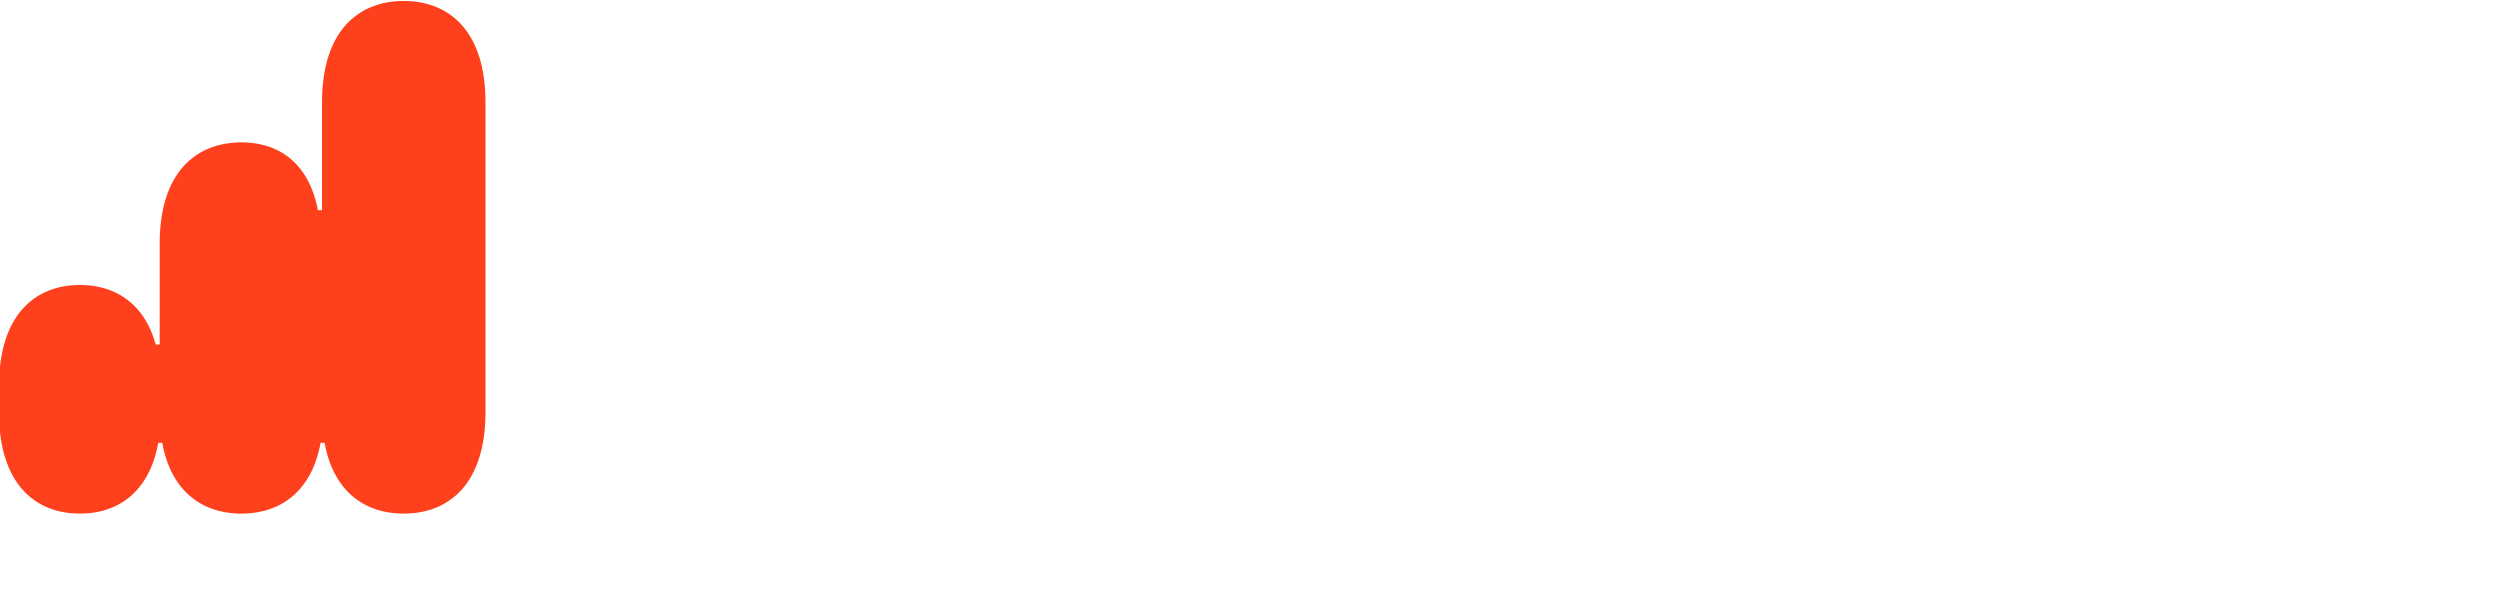 instagrid logo